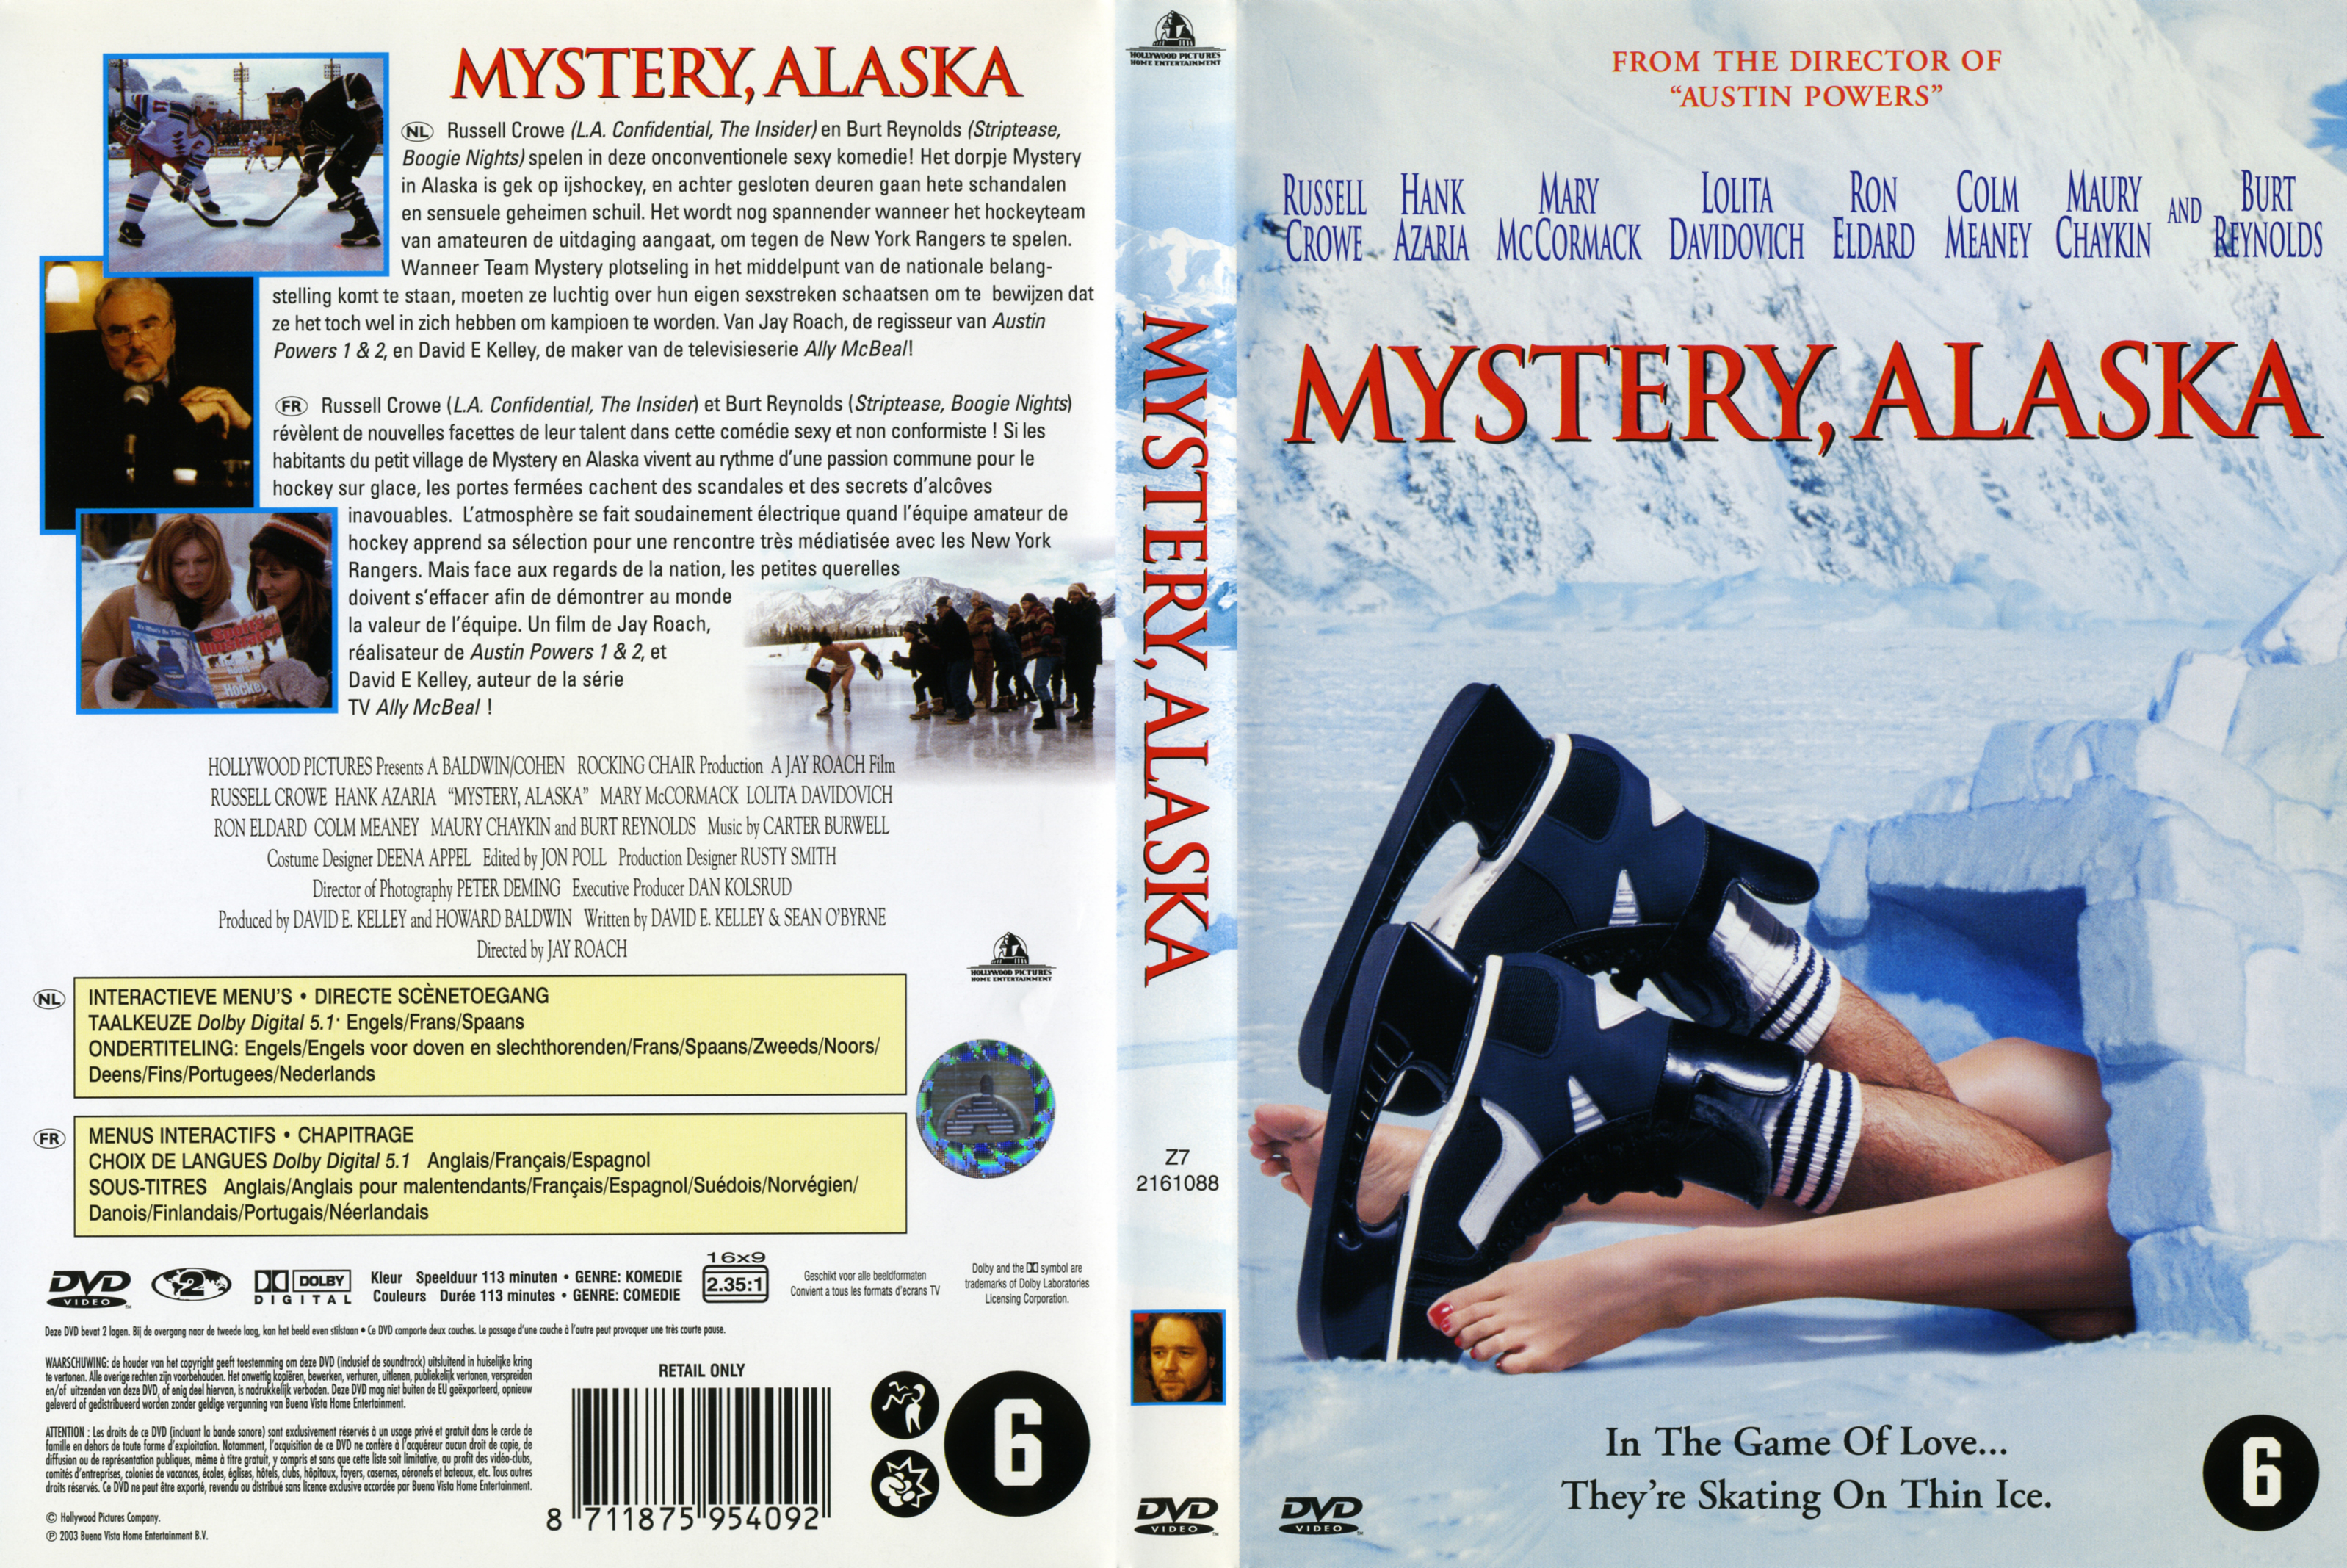 Jaquette DVD Mystery Alaska v2